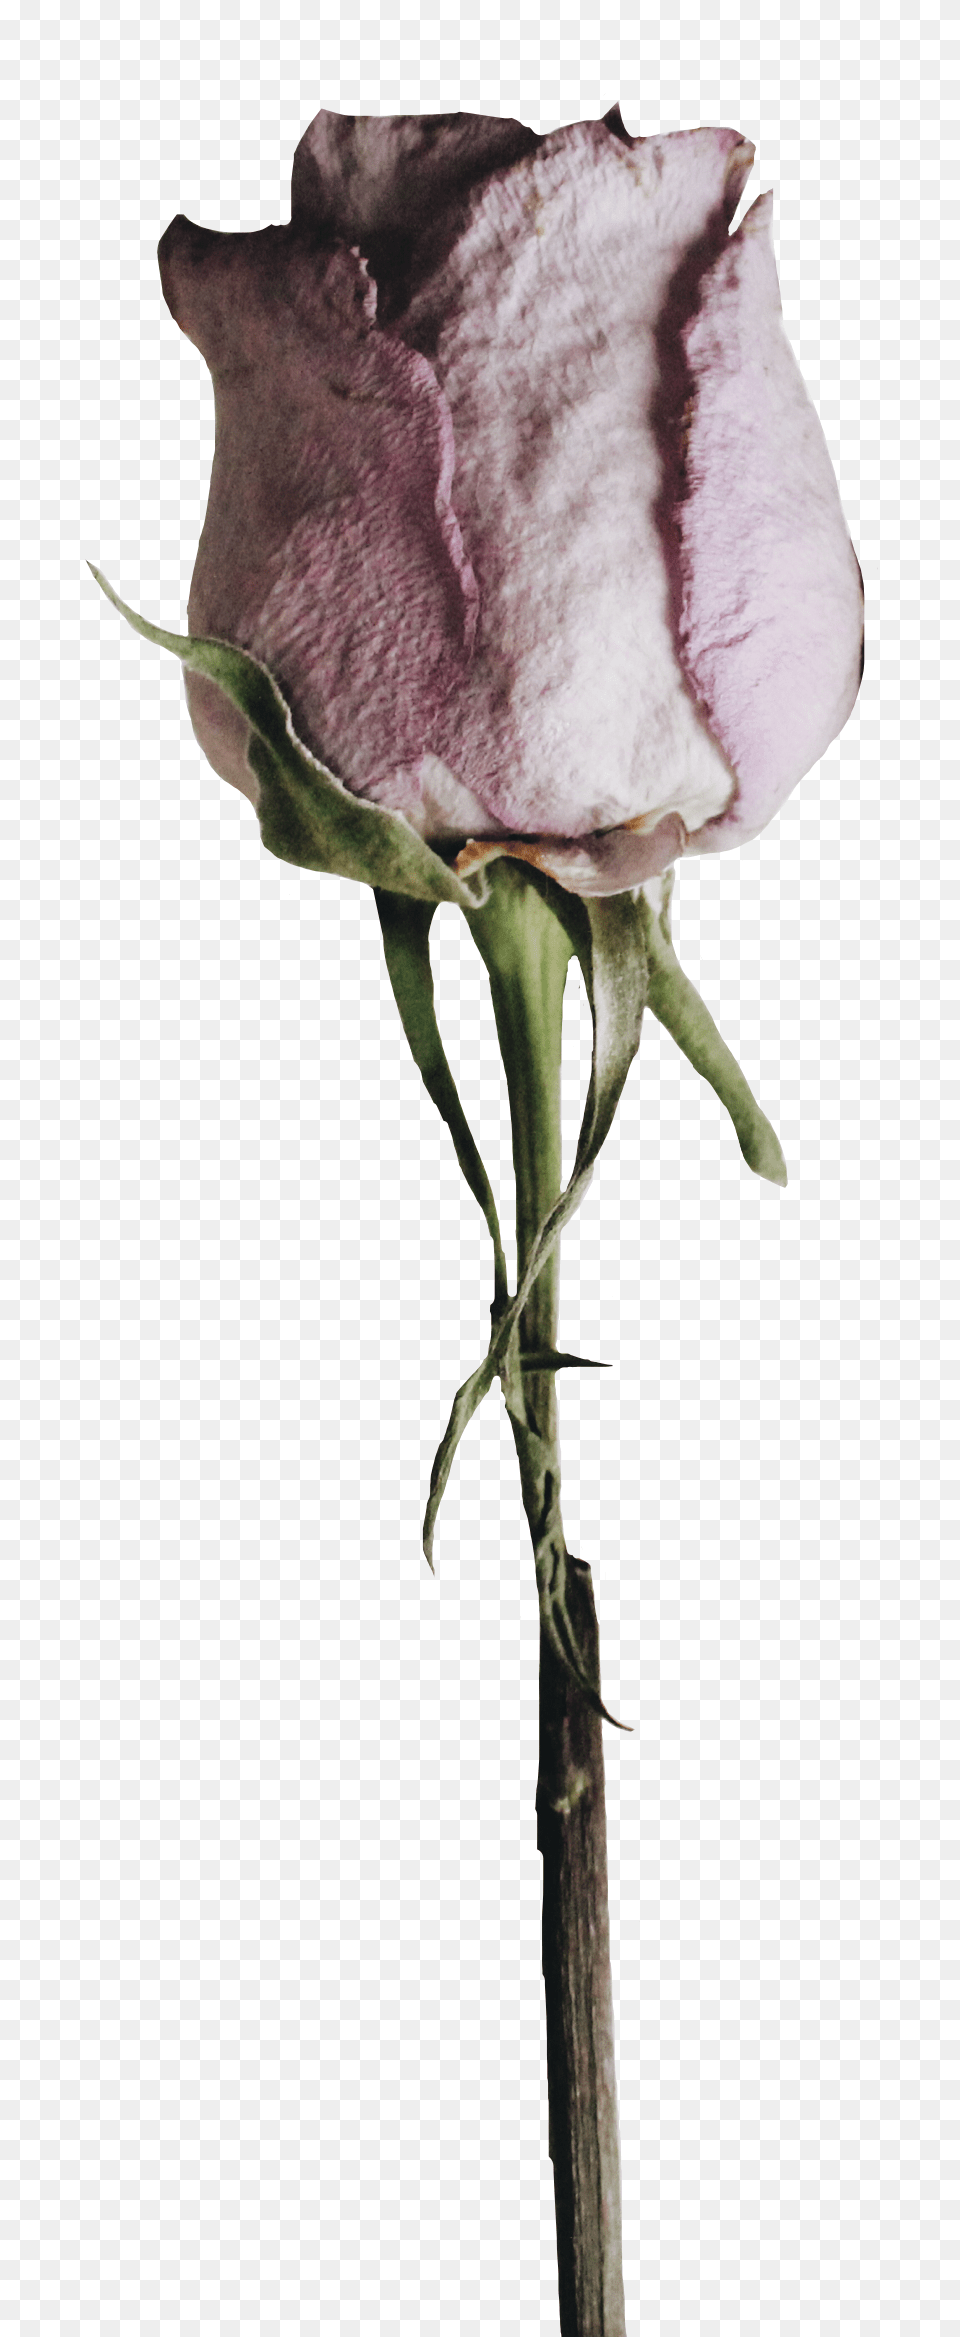 Sad Flower, Plant, Rose, Bud, Petal Free Transparent Png